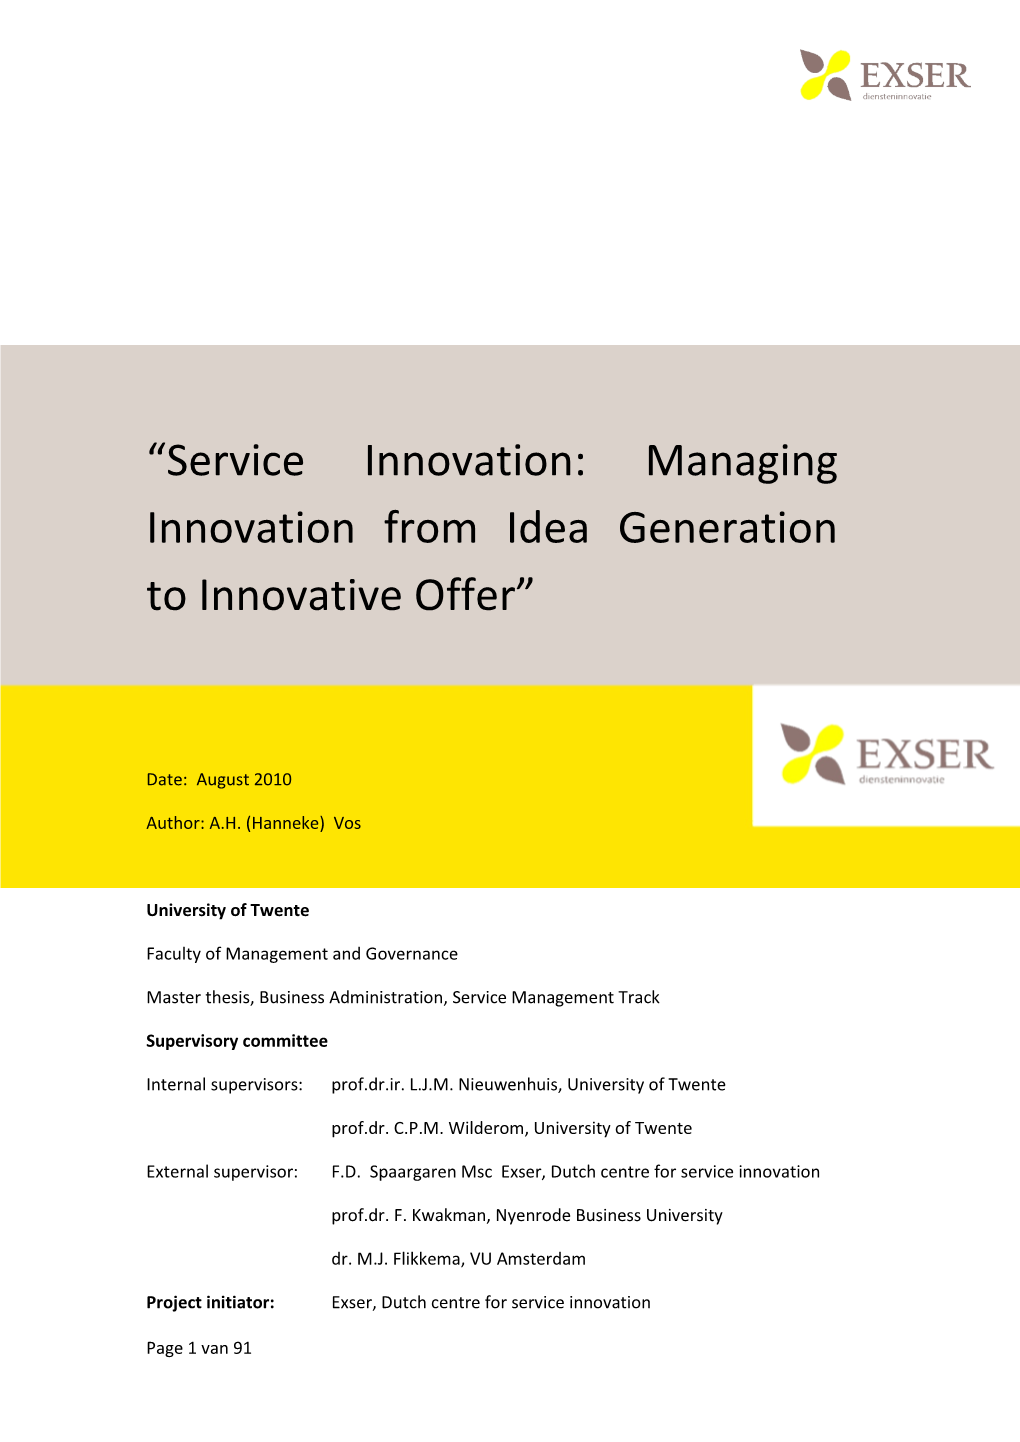 “Service Innovation: Managing Innovation from Idea Generation to Innovative Offer”